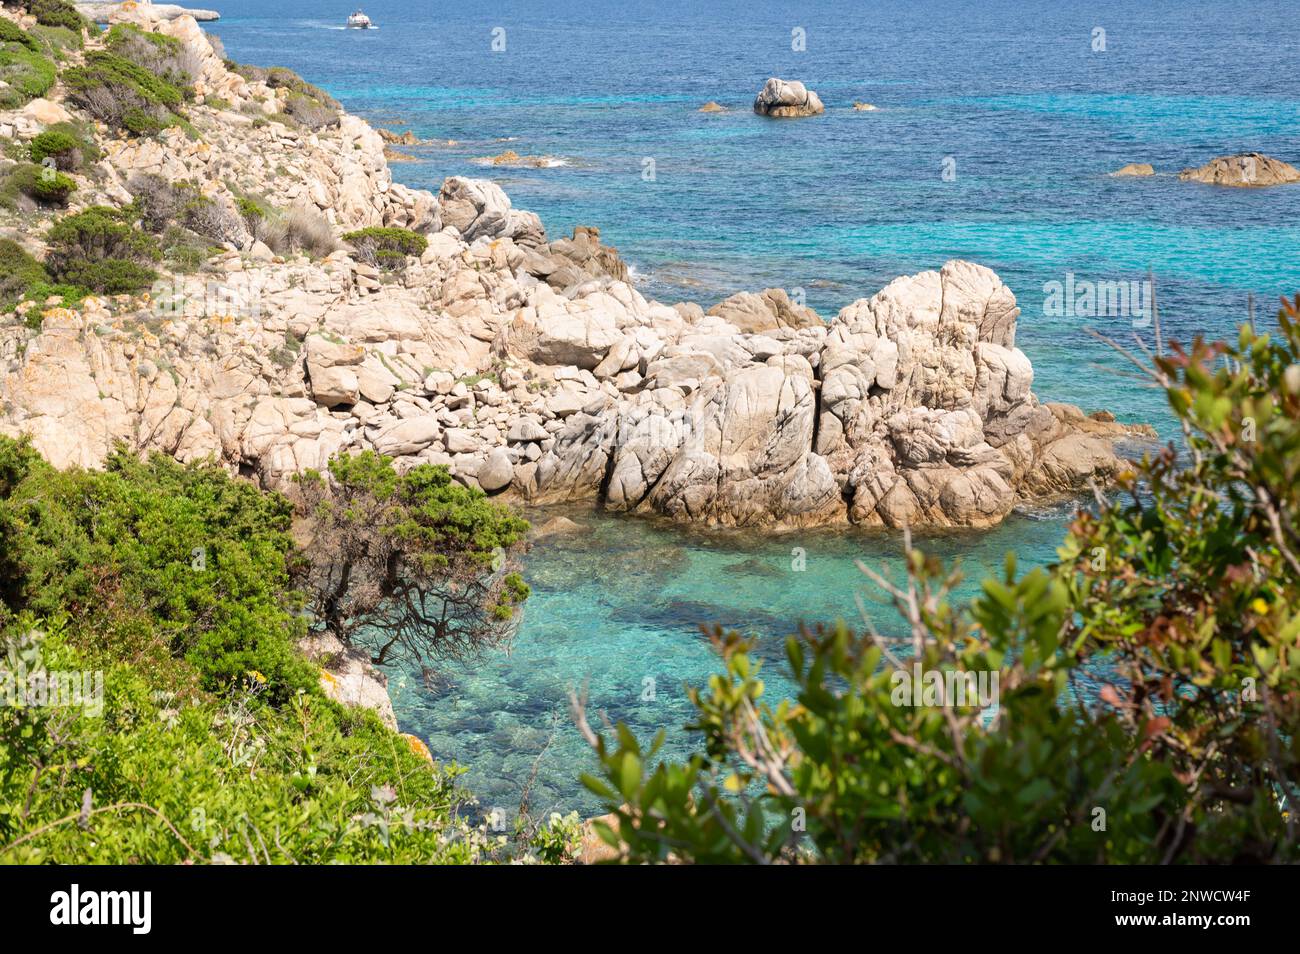 Vue sur une Belle Crique paradisiaque de Bonifacio, mer cristalline bleue, Maquis et rochers de Granit Stockfoto